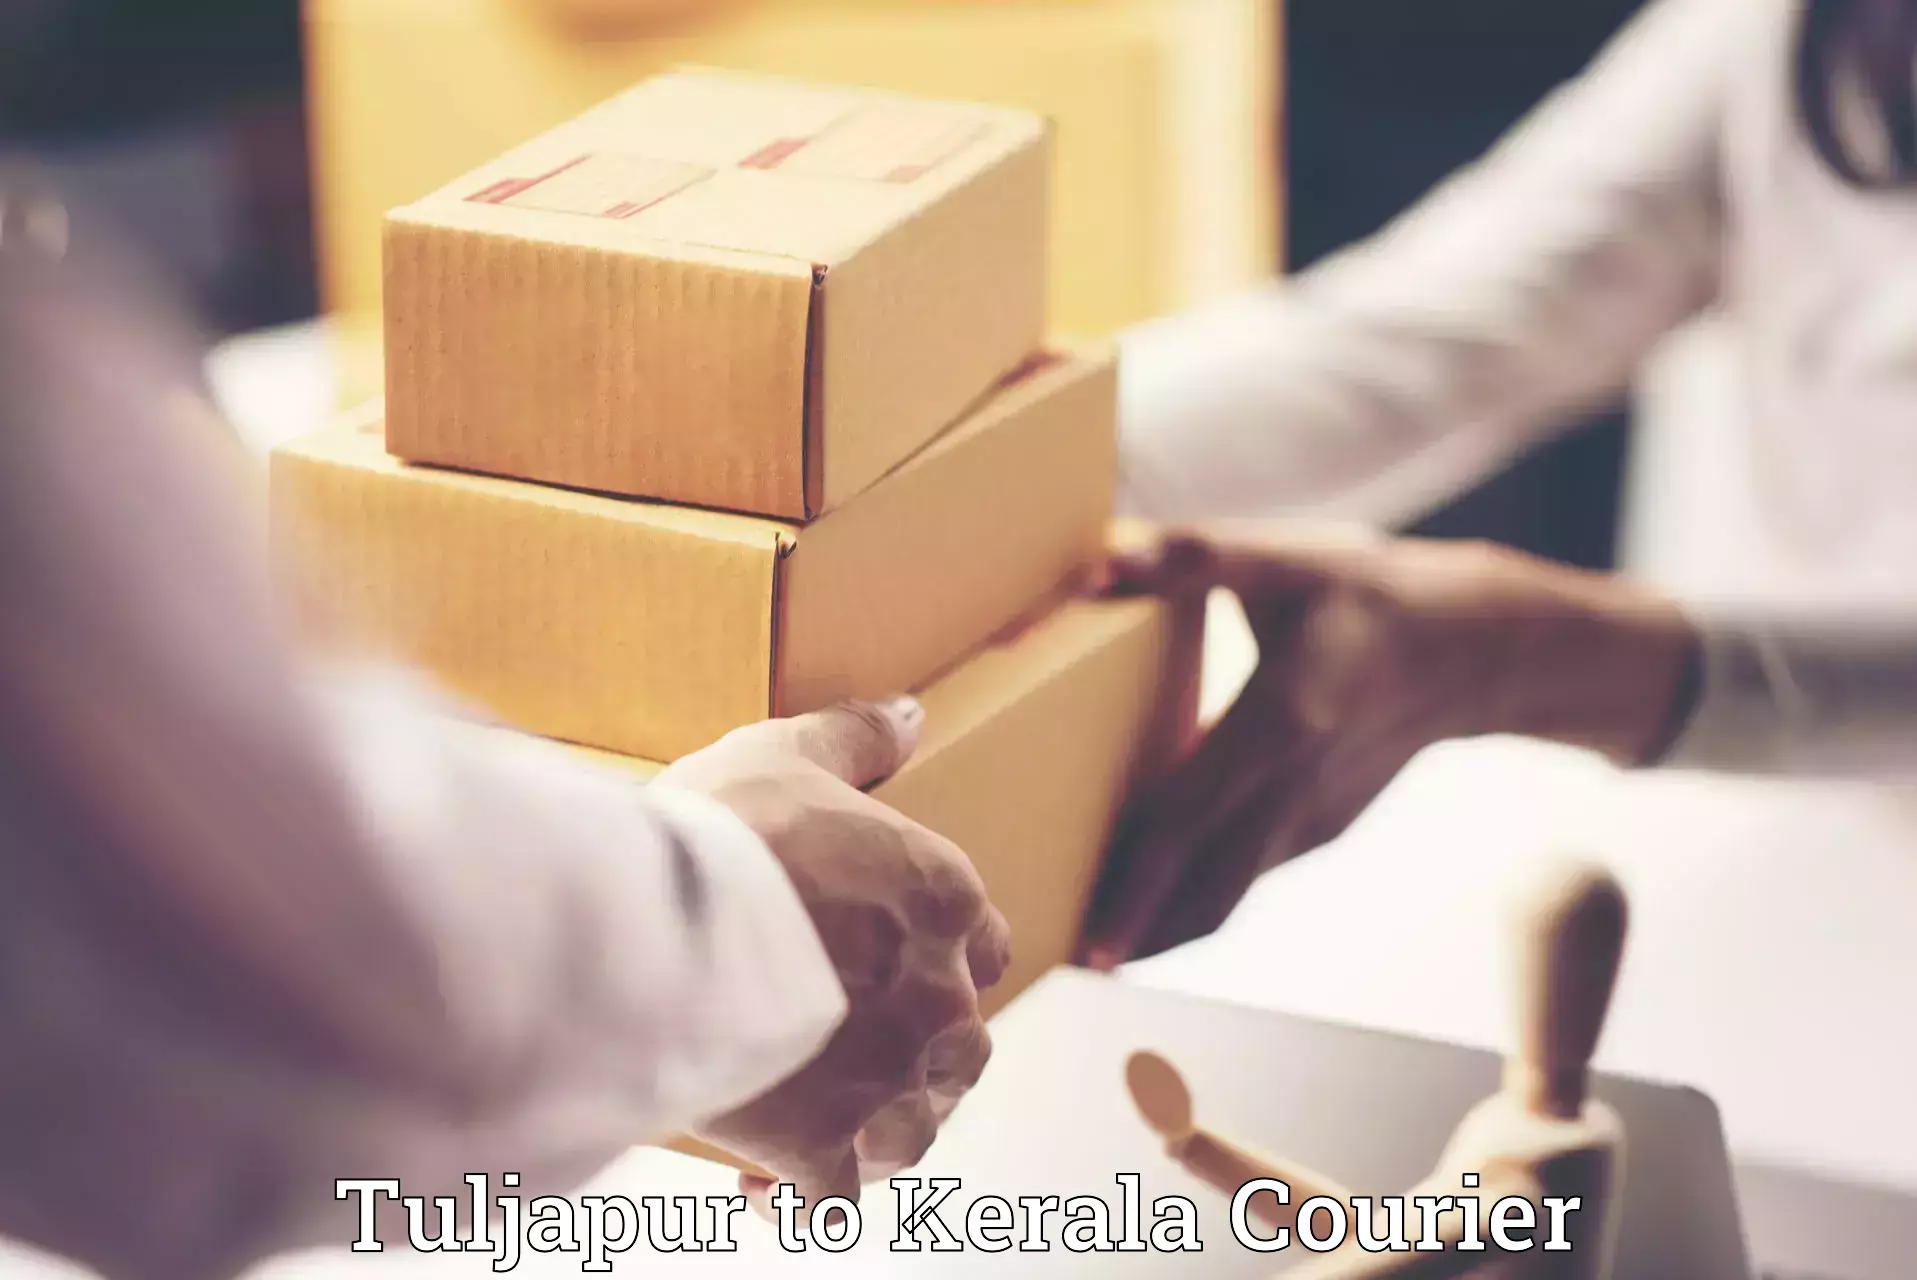 Door-to-door baggage service Tuljapur to Kalpetta